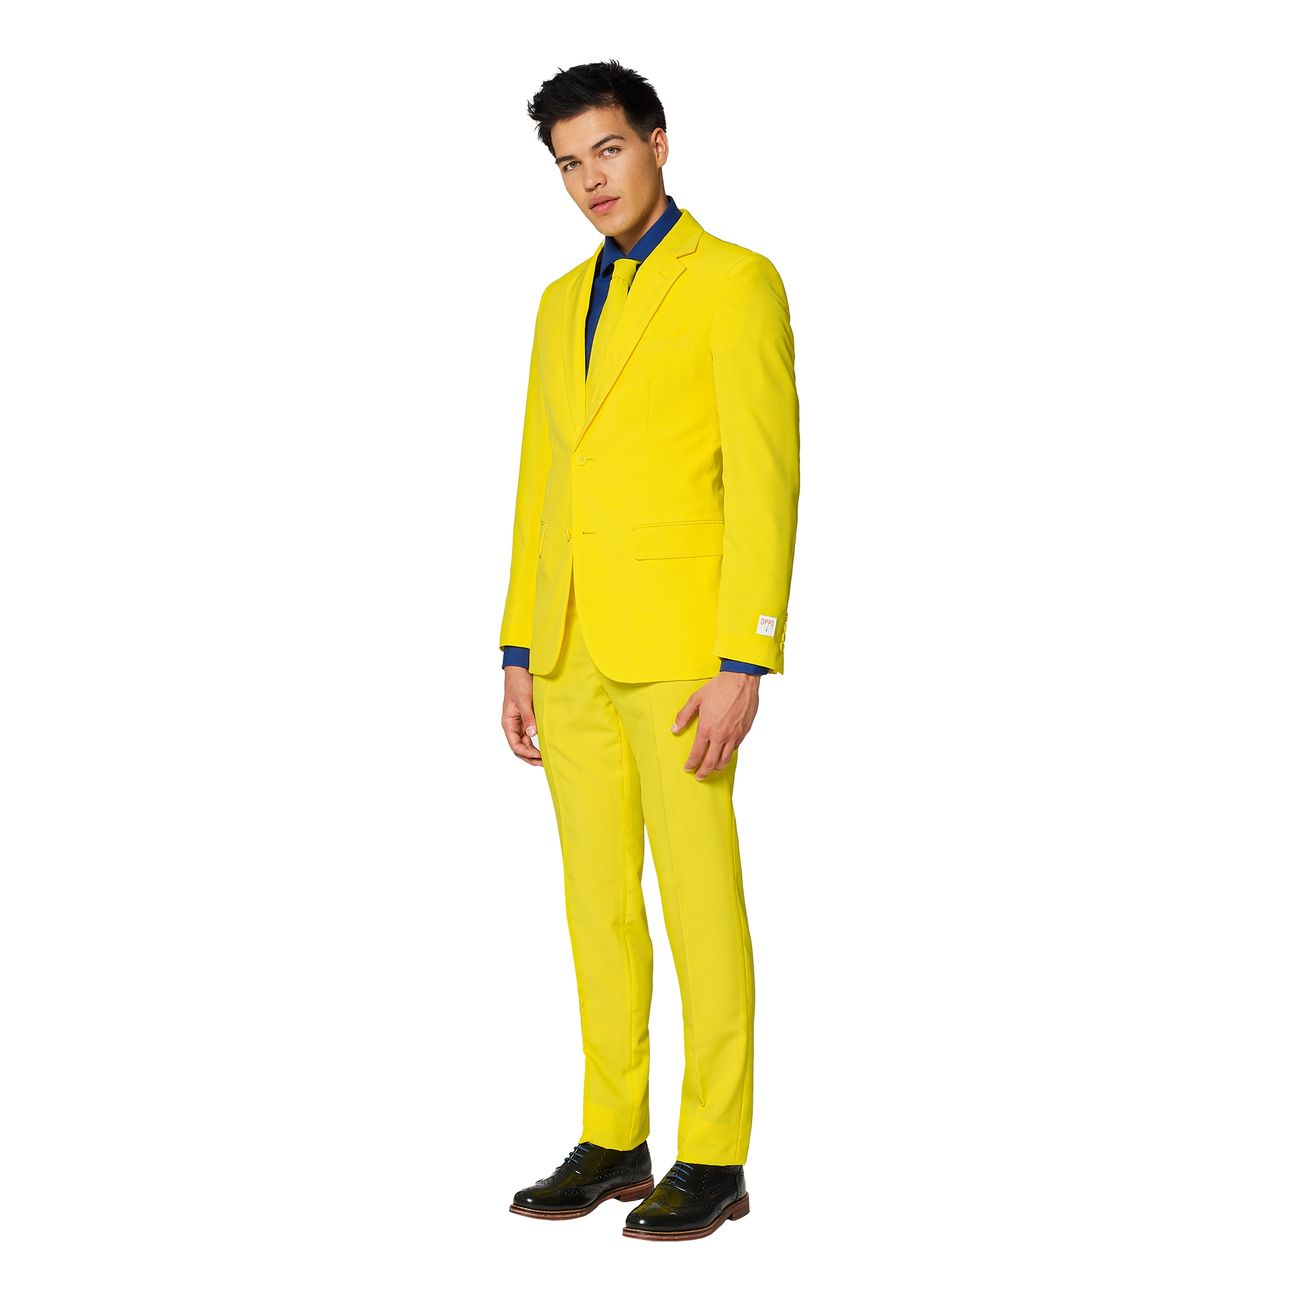 opposuits-yellow-fellow-kostym-30605-5